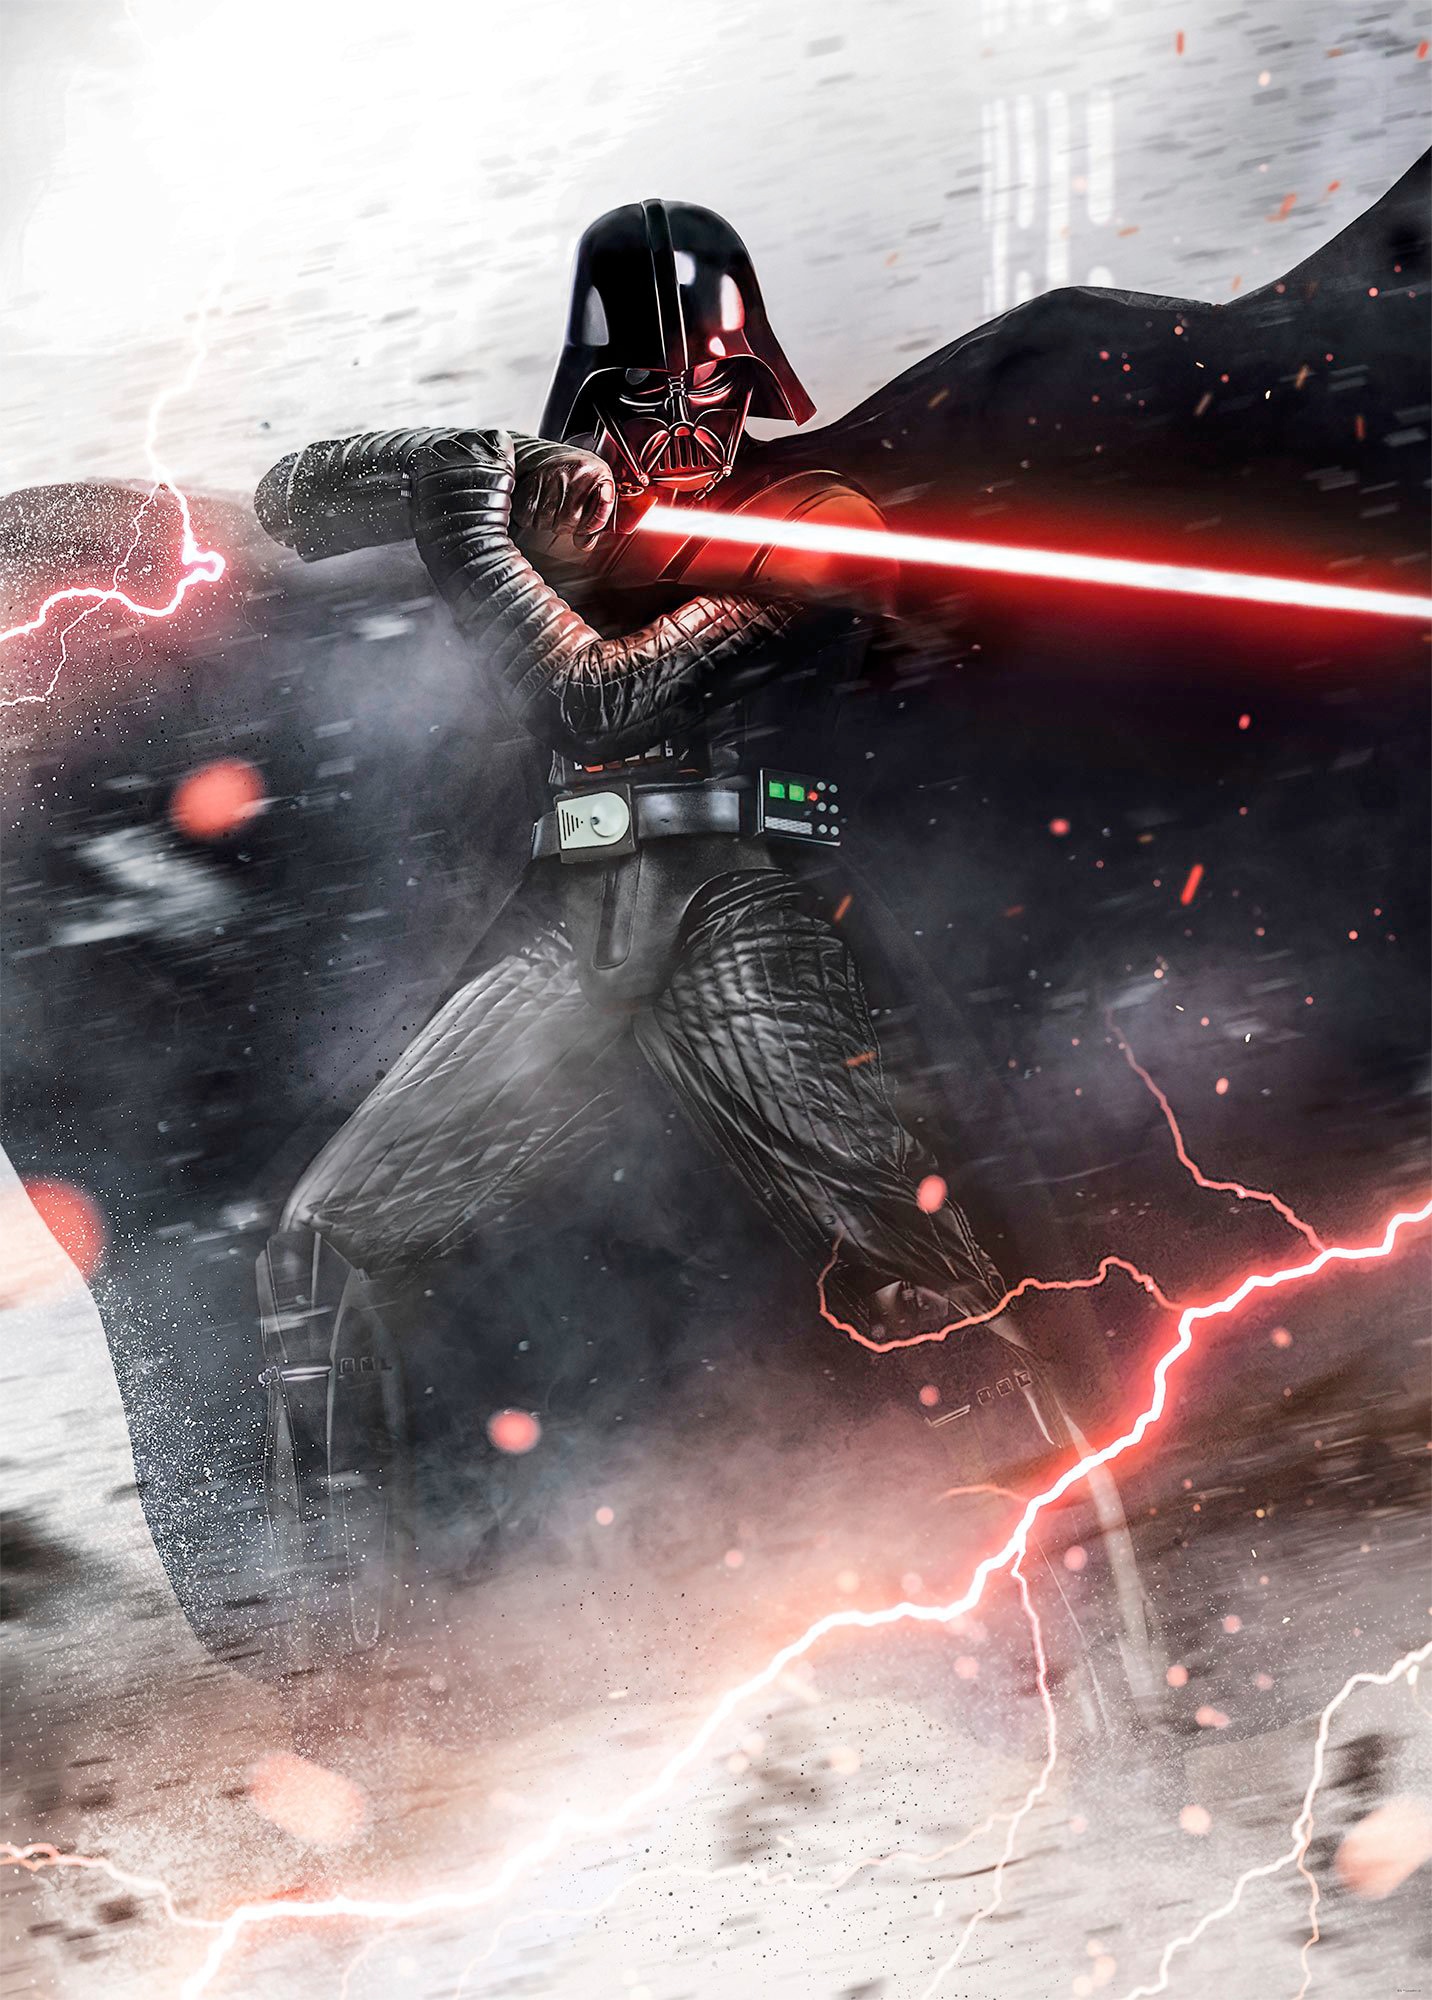 Komar Vliestapete »Star Wars Vader Dark Forces«, 200x280 cm (Breite x Höhe)  online kaufen bei OTTO